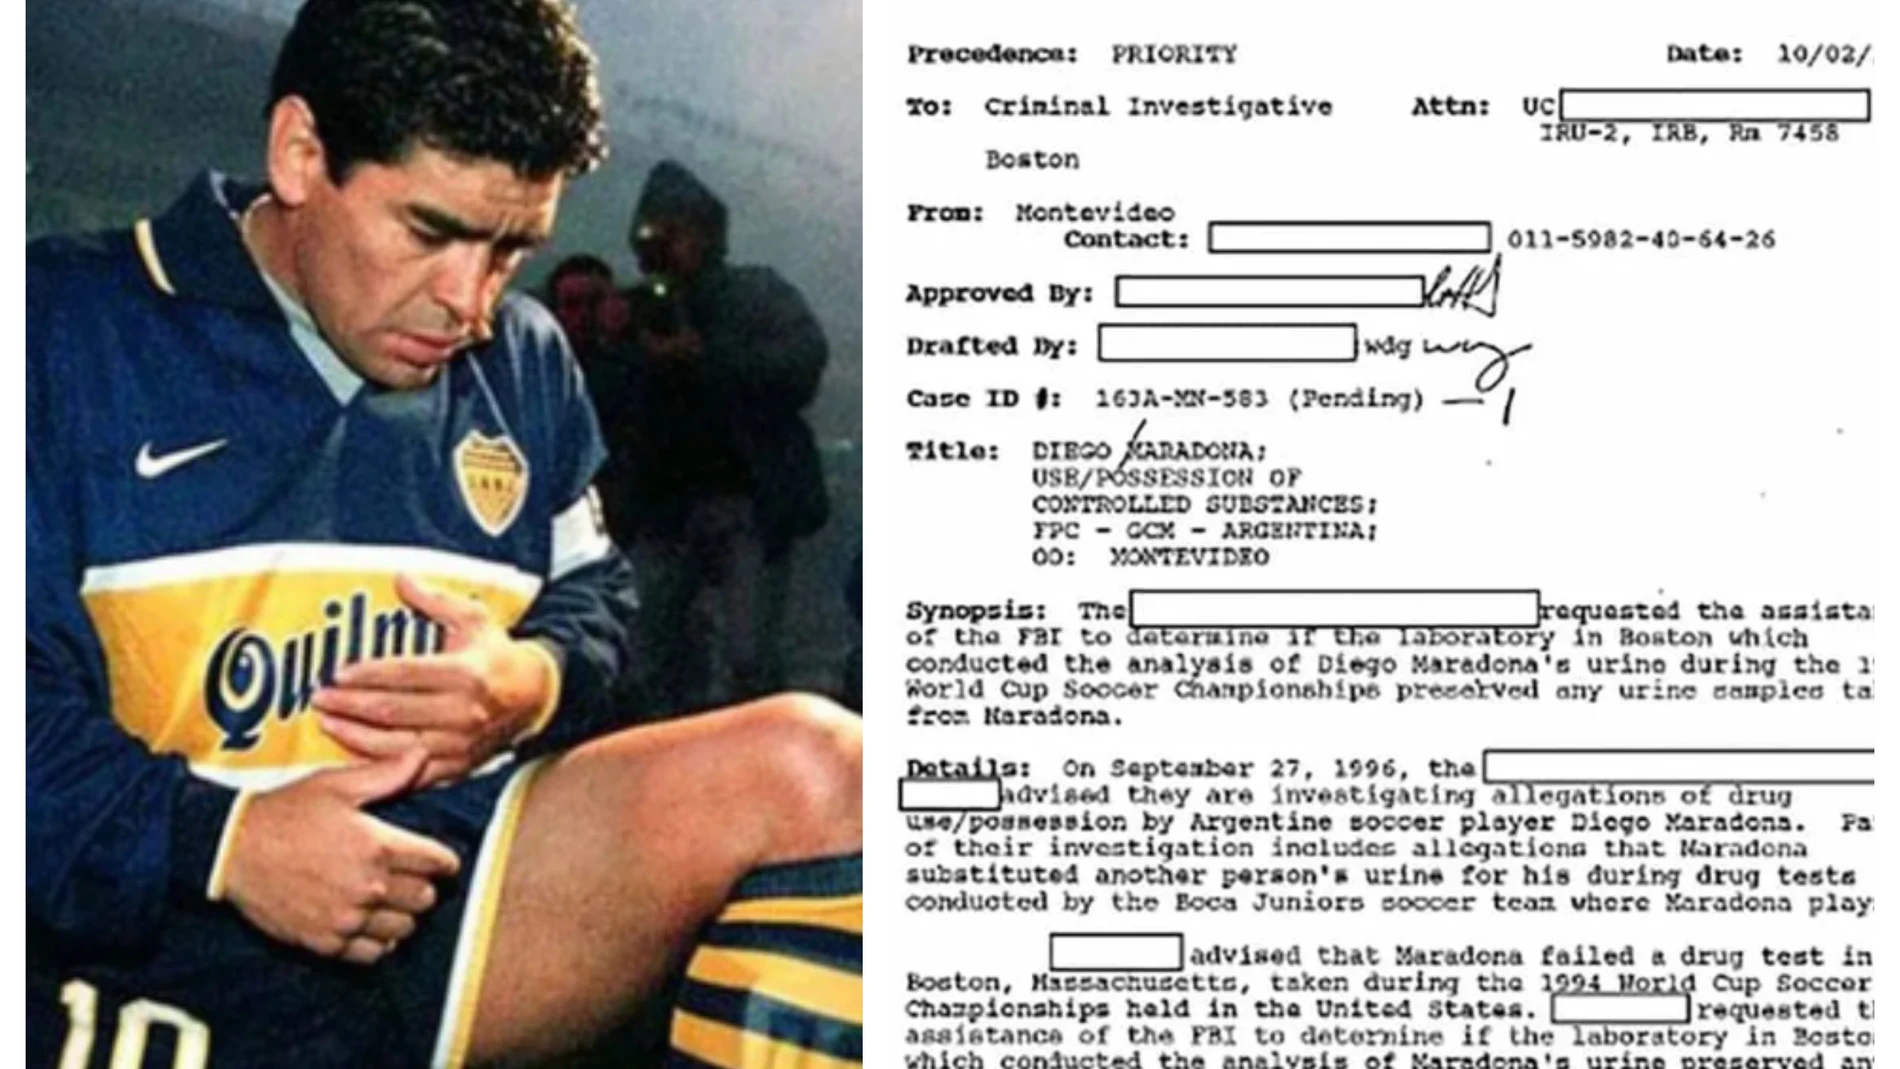 Los documentos desclasificados del FBI sobre Maradona y por qué lo investigaron en 1996